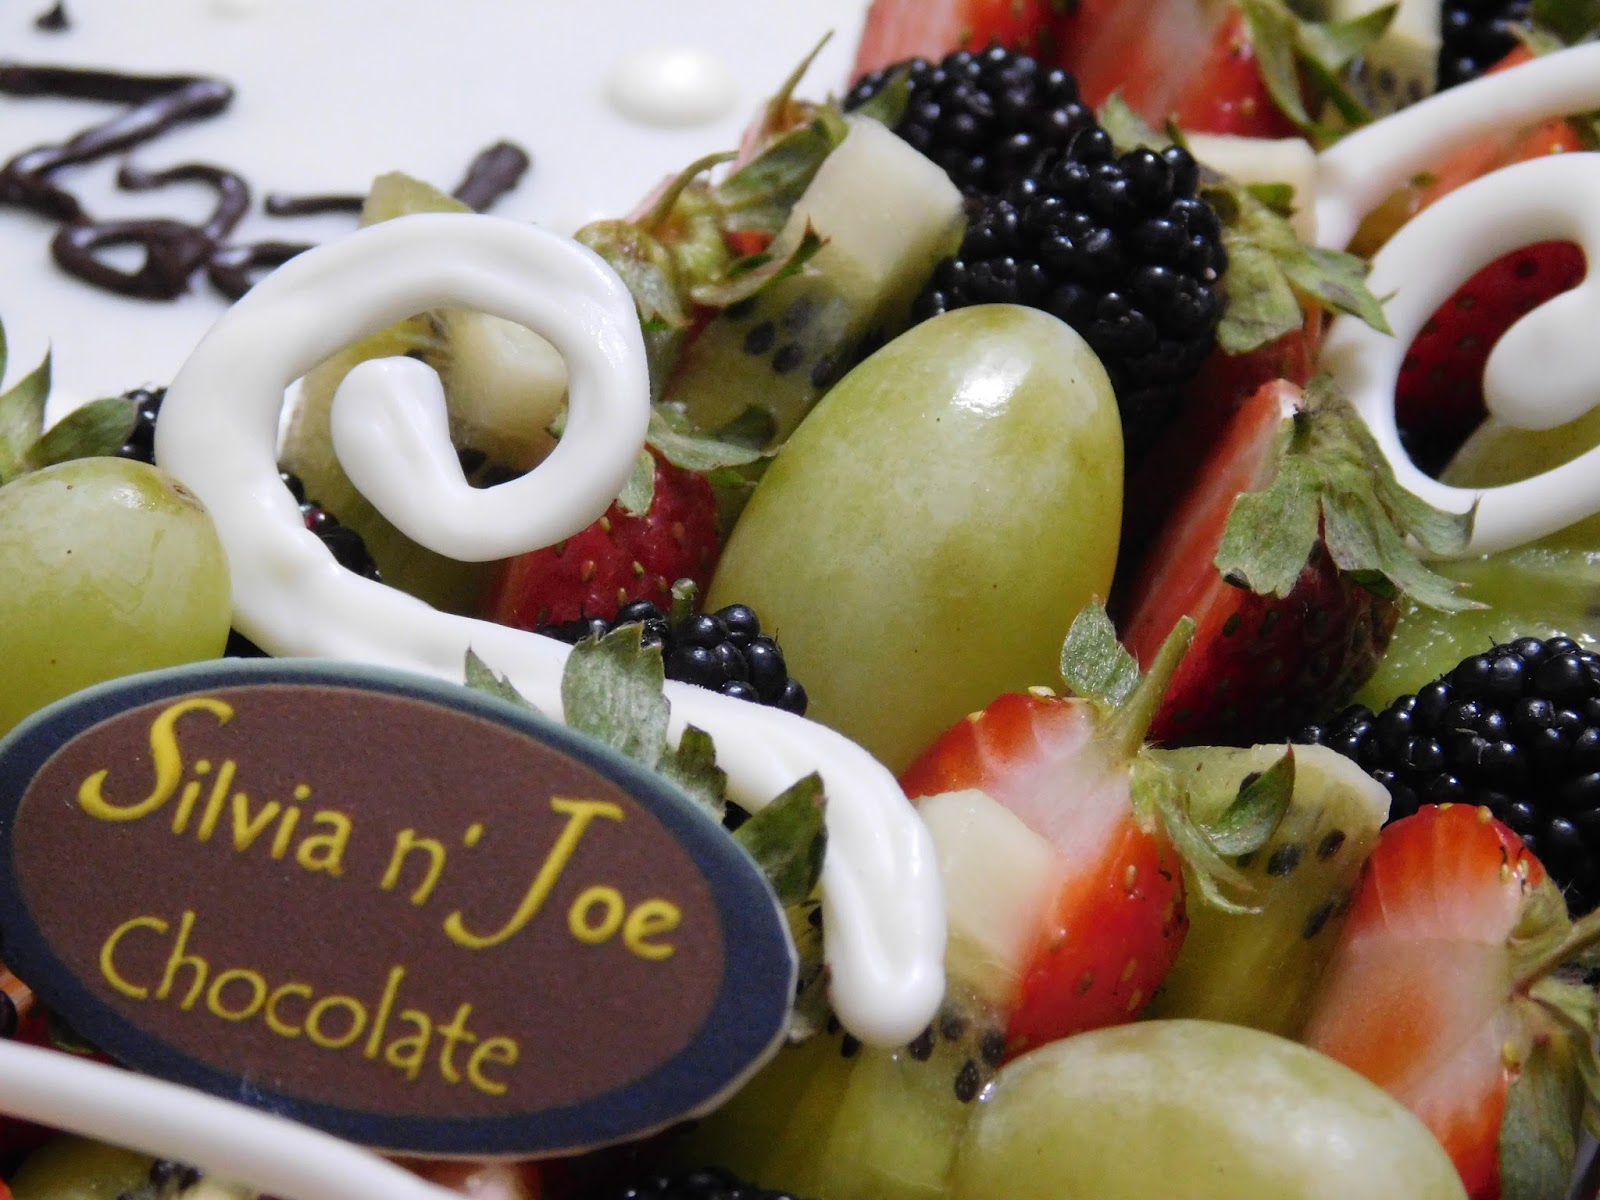 Kisah Sukses Bisnis Coklat Silvia n' Joe Chocolate, Terinspirasi Hadiah dari Fans 2